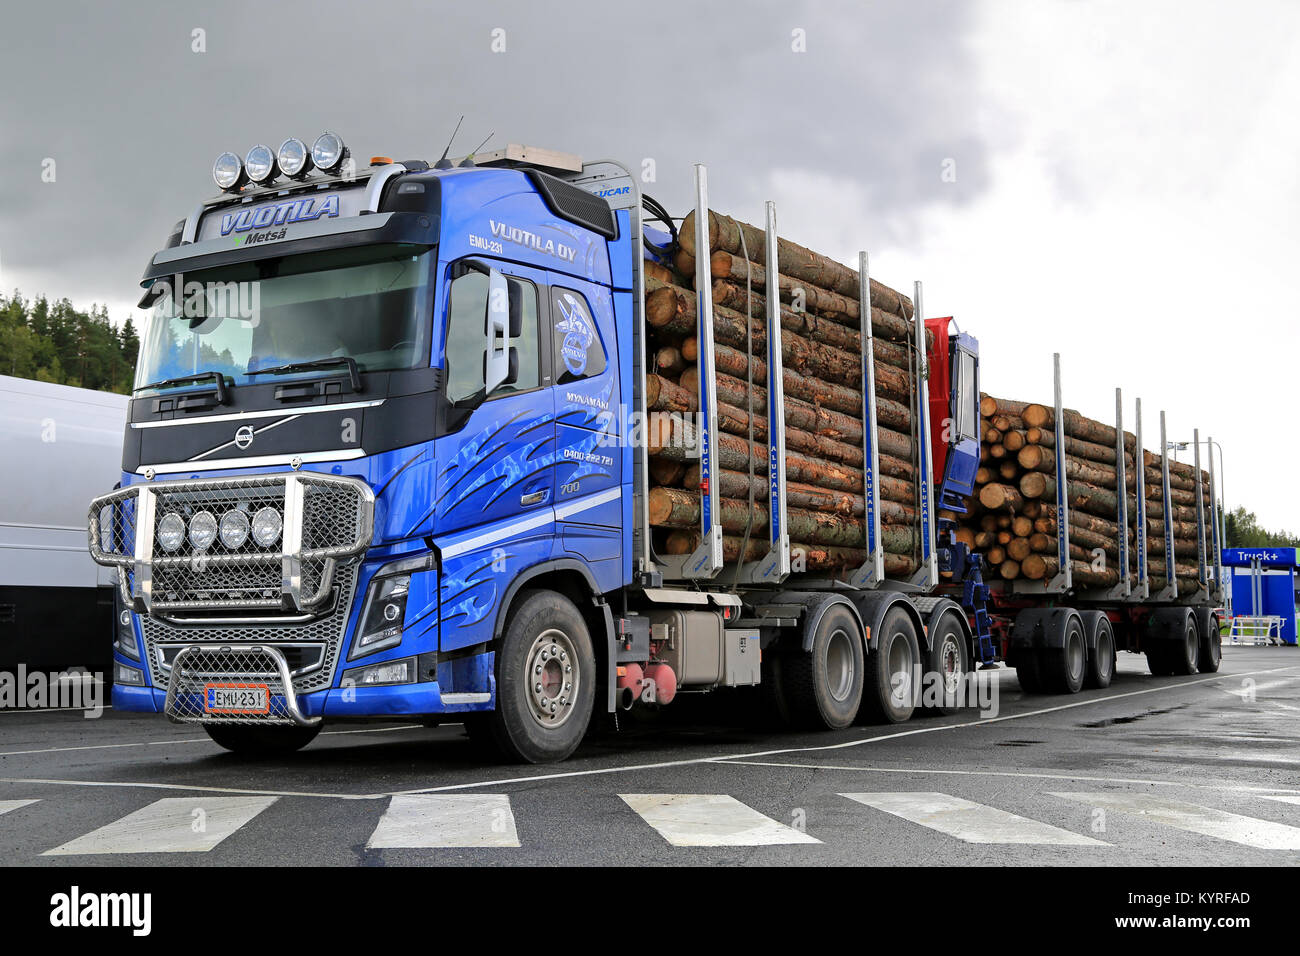 FORSSA, FINLANDE - le 28 août 2014 : Volvo FH16 700 chariot bois avec remorques à grumes épicéa. Rapports Metla croissance de 2  % dans le commerce de bois finlandais Extrêmes Janvier Ã août 20 Banque D'Images